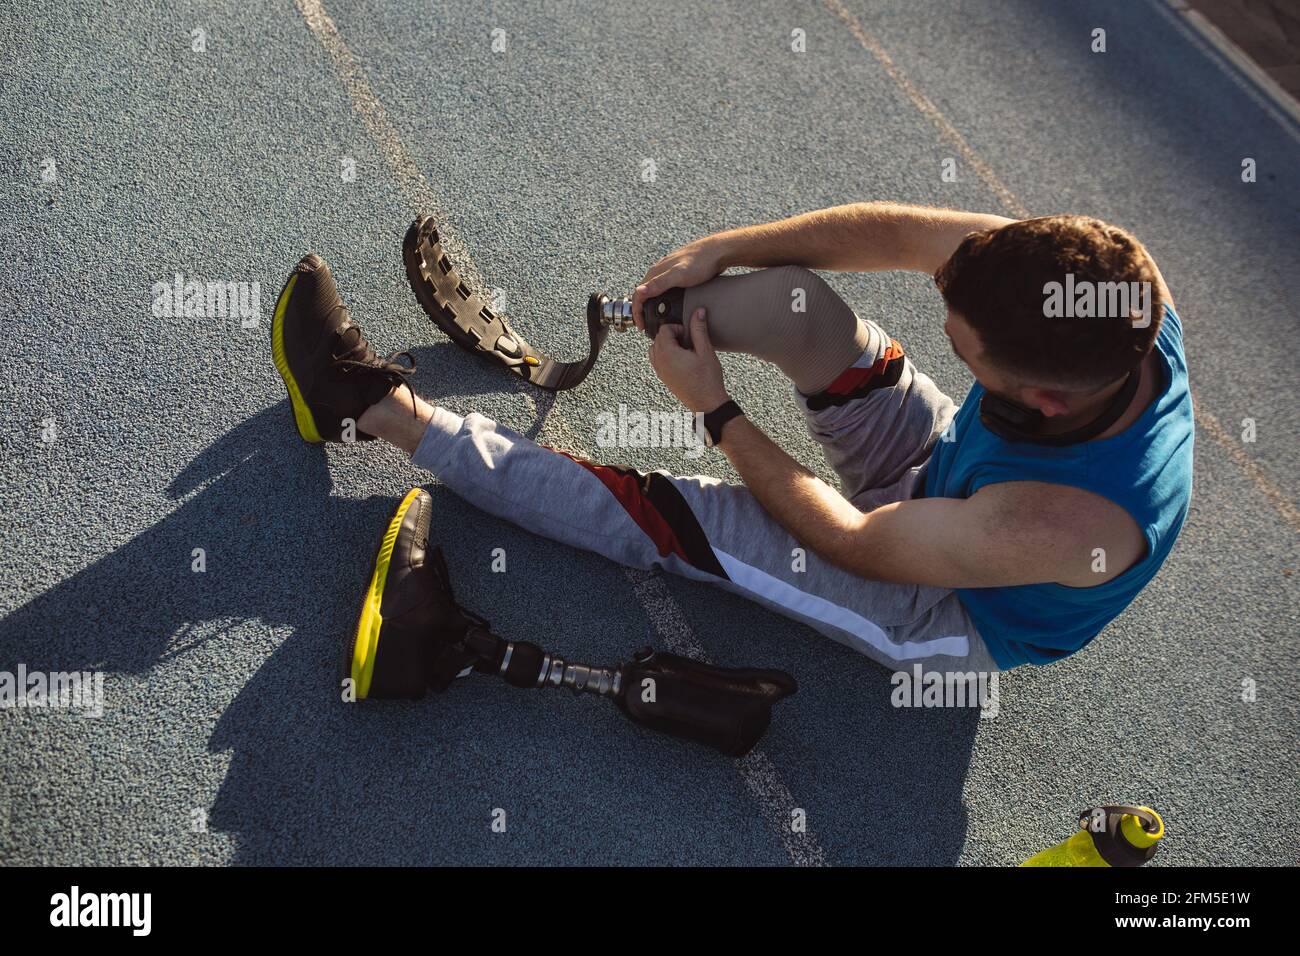 Un athlète de sexe caucasien fixe sa jambe prothétique en étant assis dessus piste de course dans le stade Banque D'Images